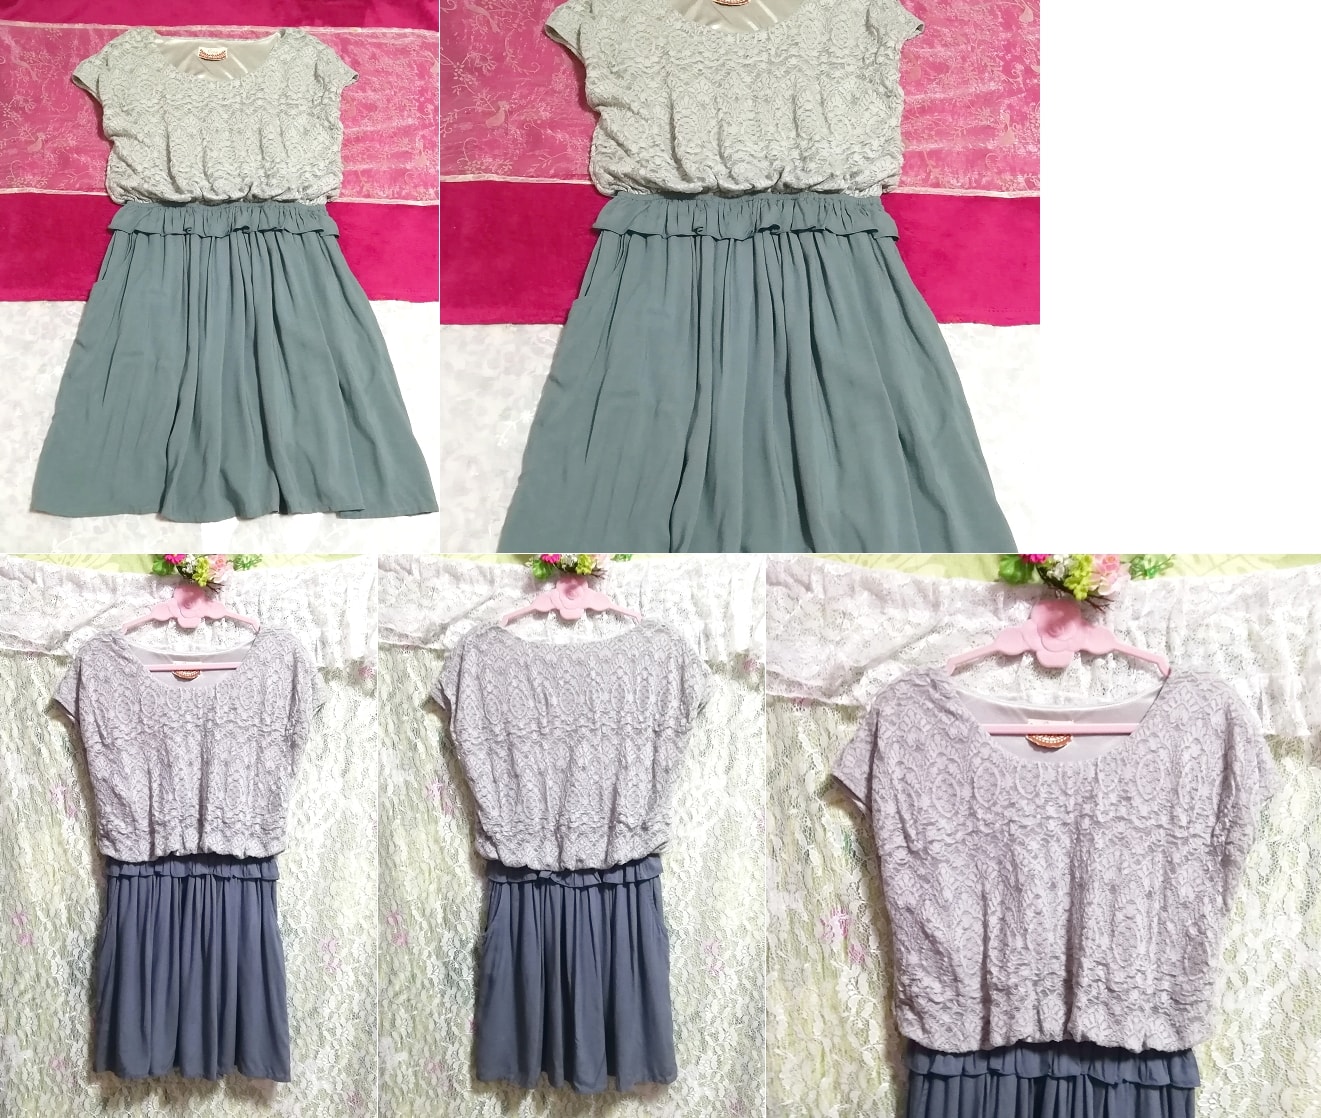 Пепельно-серая кружевная юбка с короткими рукавами, пеньюар, ночная рубашка, платье-туника, мини-юбка, размер м